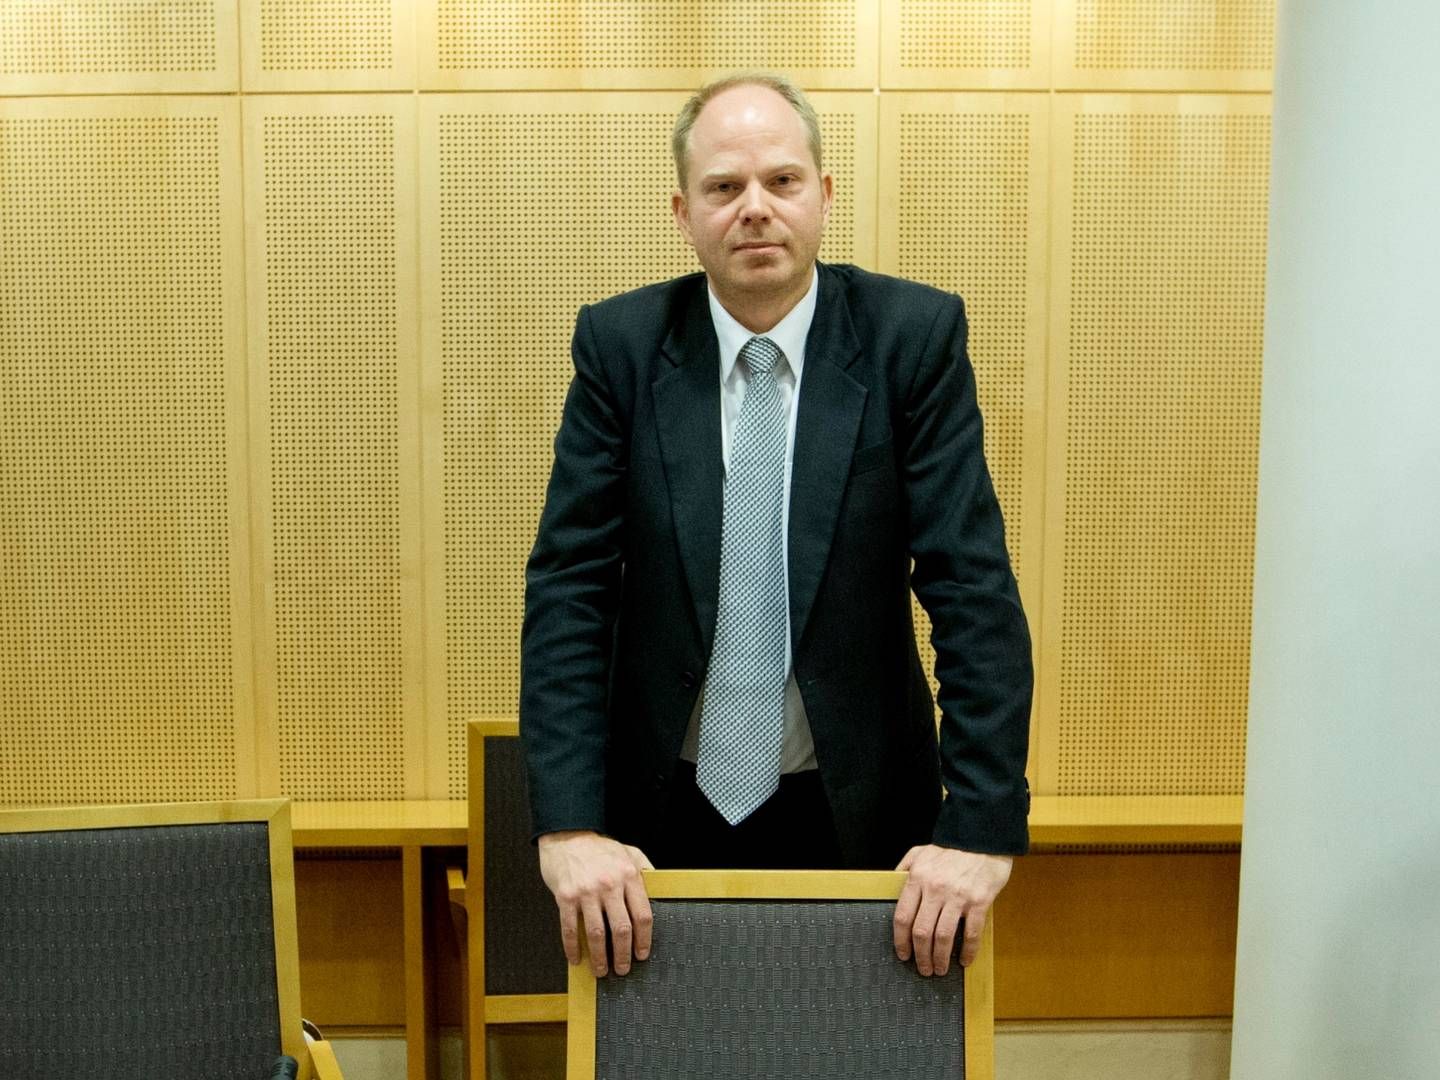 DIREKTØR: Dag Eriksen er for tiden direktør i Tilsynsrådet. Her avbildet under en rettssak i 2013. | Foto: Håkon Mosvold Larsen / NTB